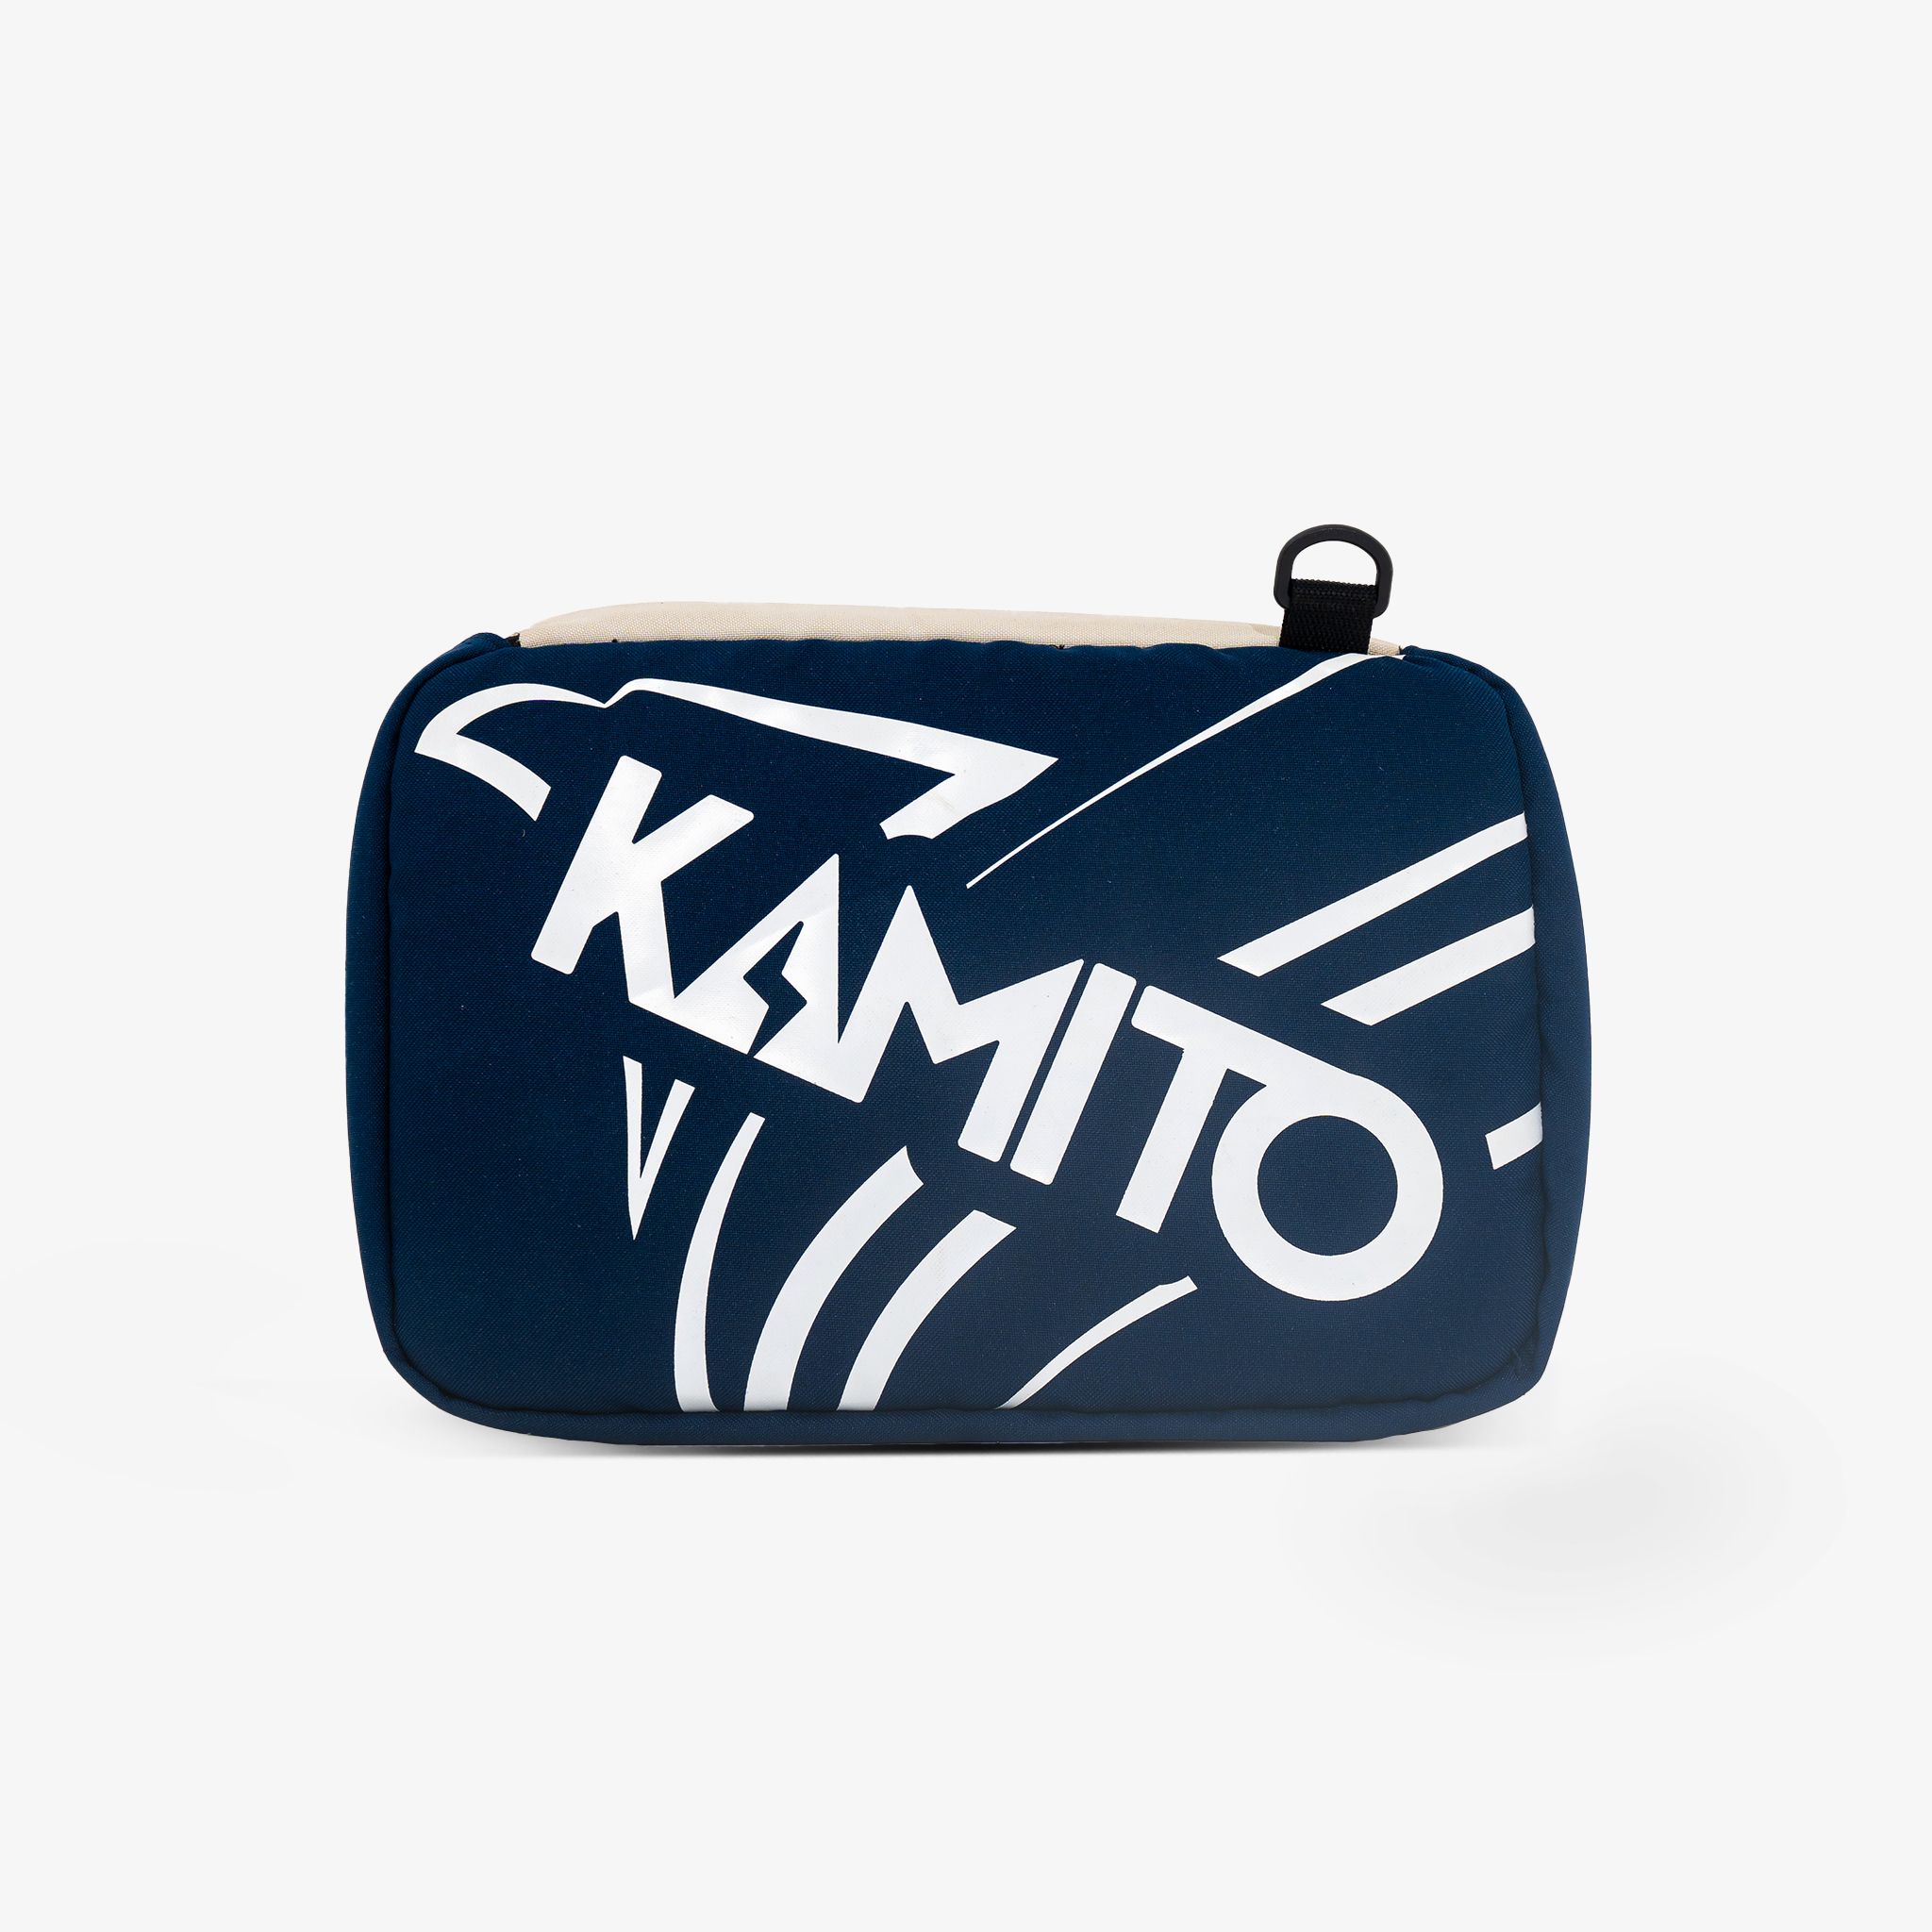  Túi đựng giày đa năng Kamito Style Pro 